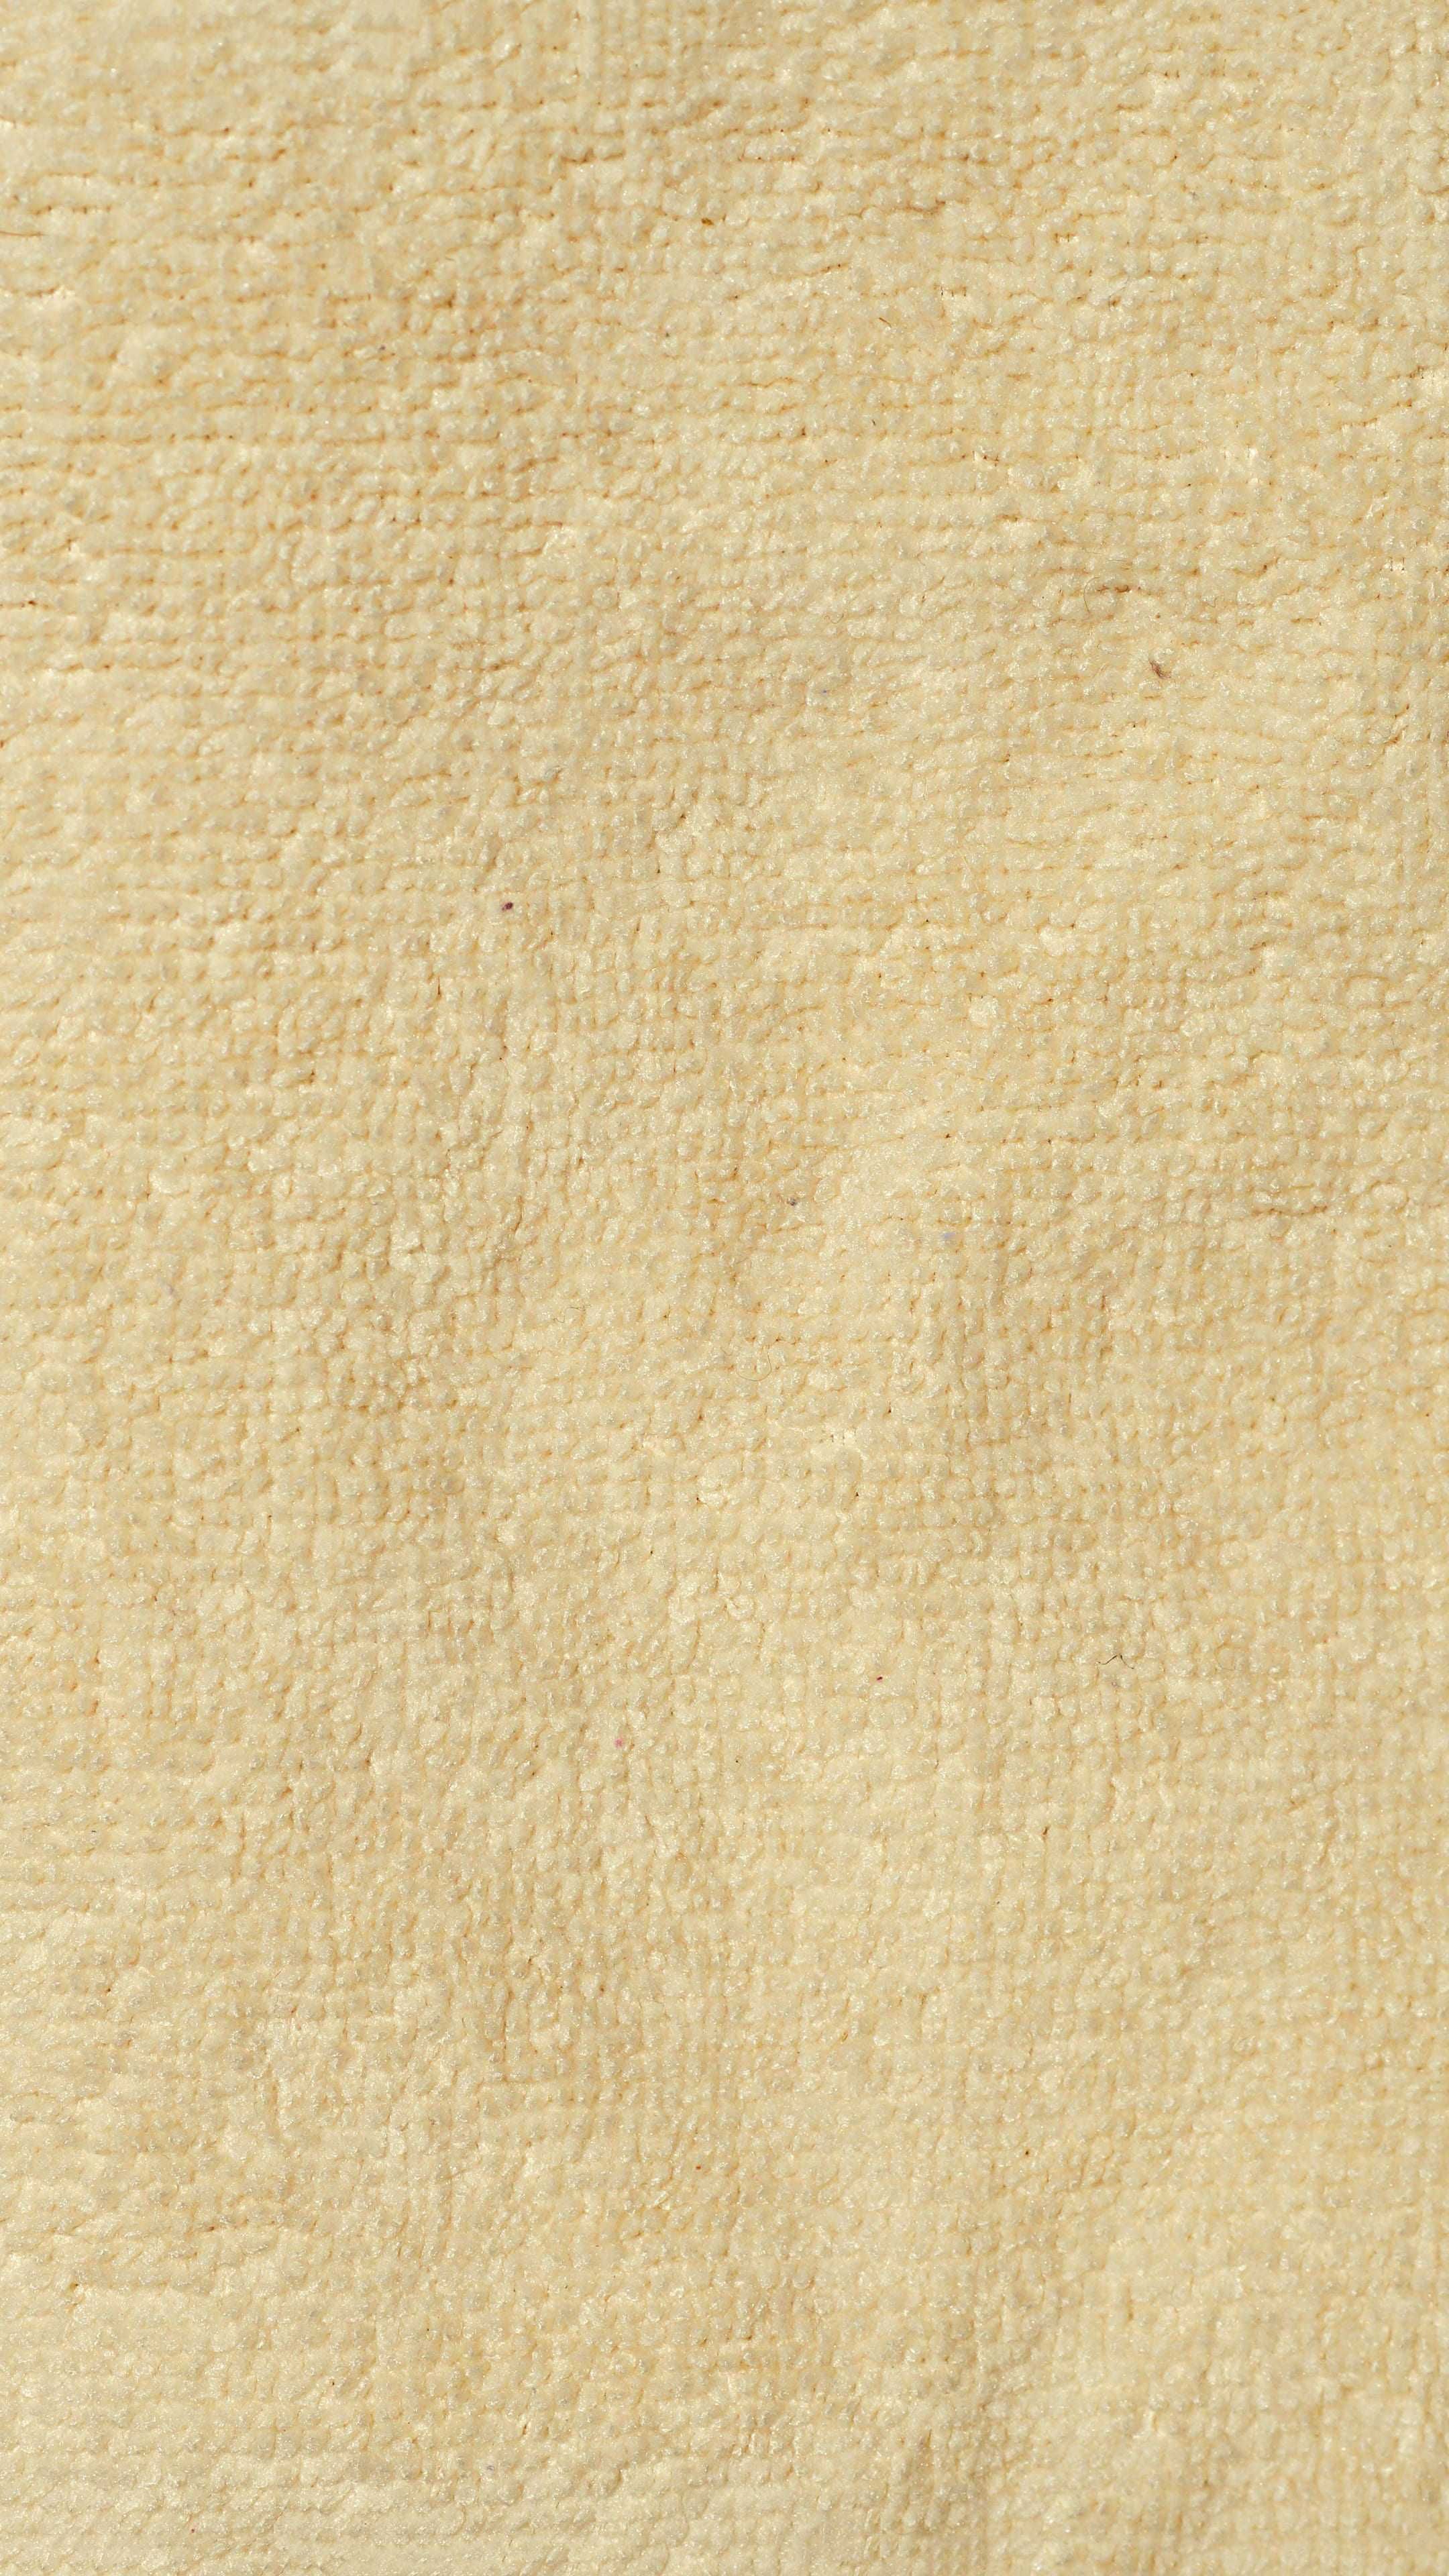 Tan Wallpaper Discover More Aesthetic Tan, Simple, Tan, Tan Color Wallpaper. /tan Wallpaper 7/. Bronze Wallpaper, Tan Wallpaper, Cream Color